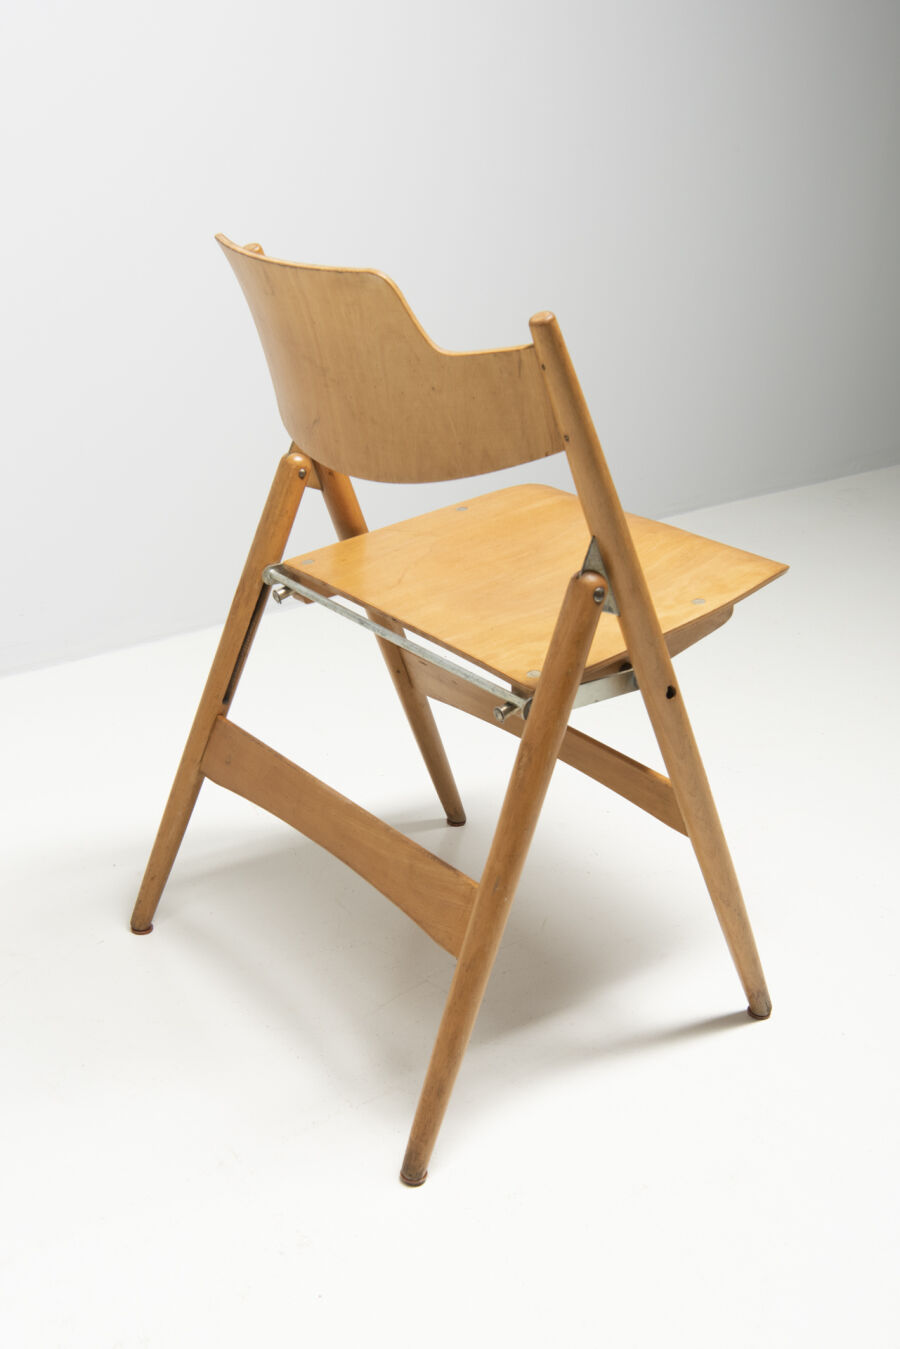 2950egon-eiermann6-folding-chairs-7